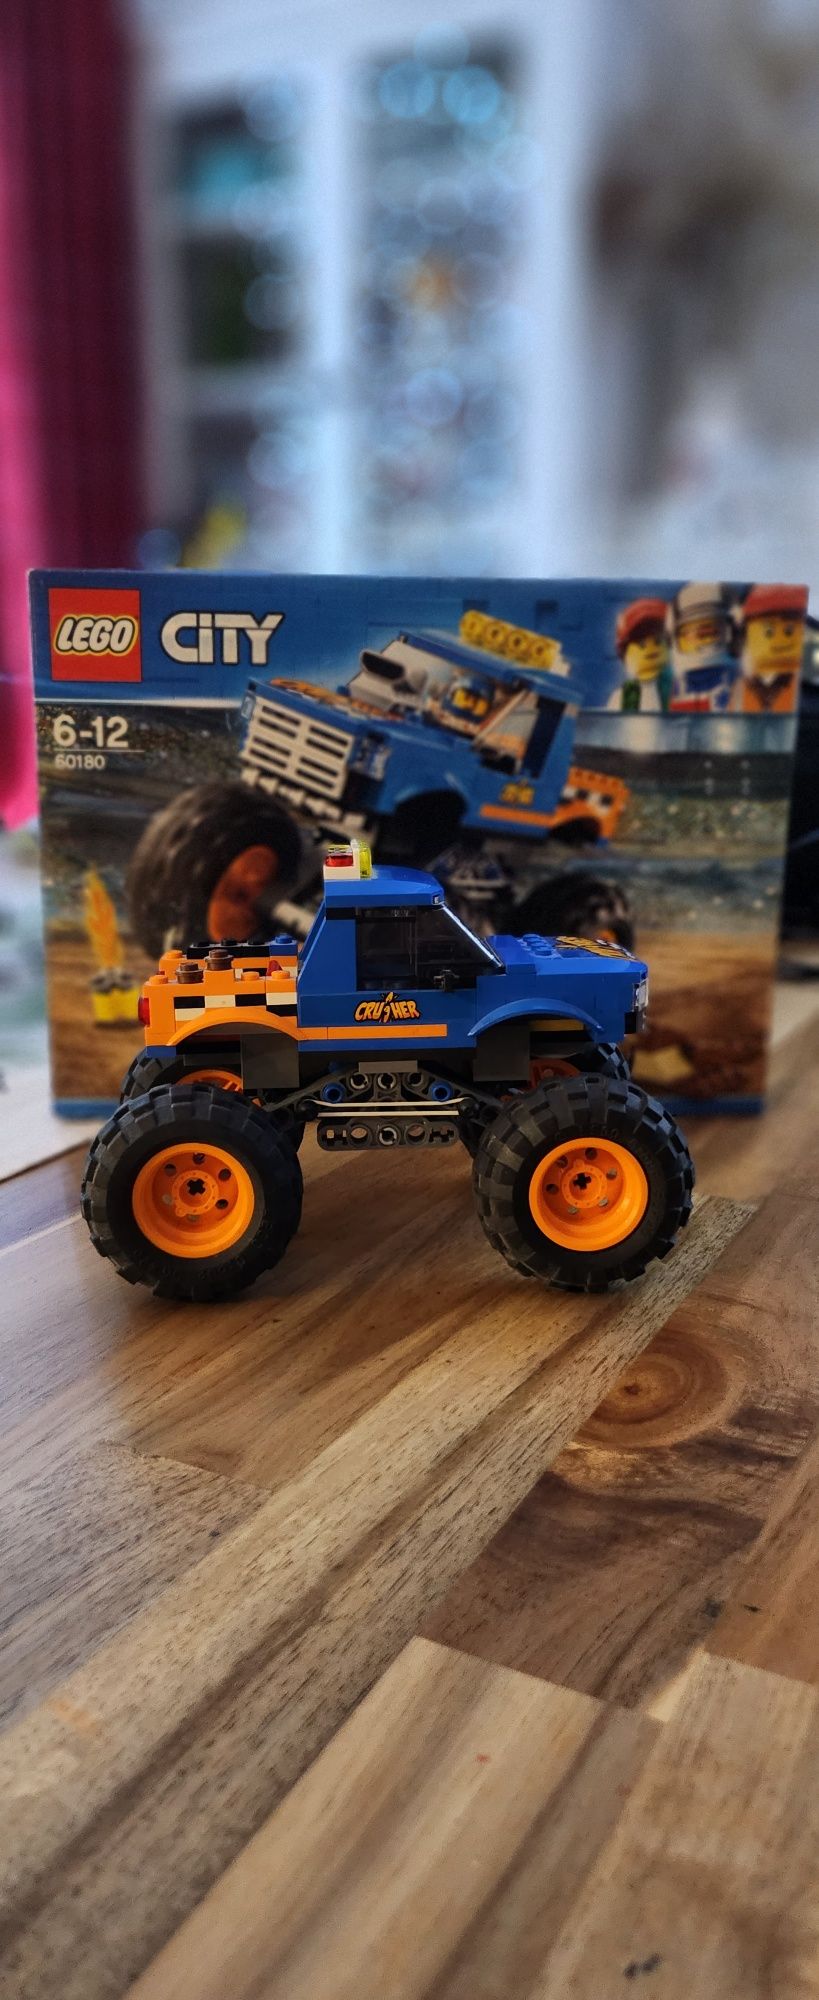 60180 lego city  monster truck